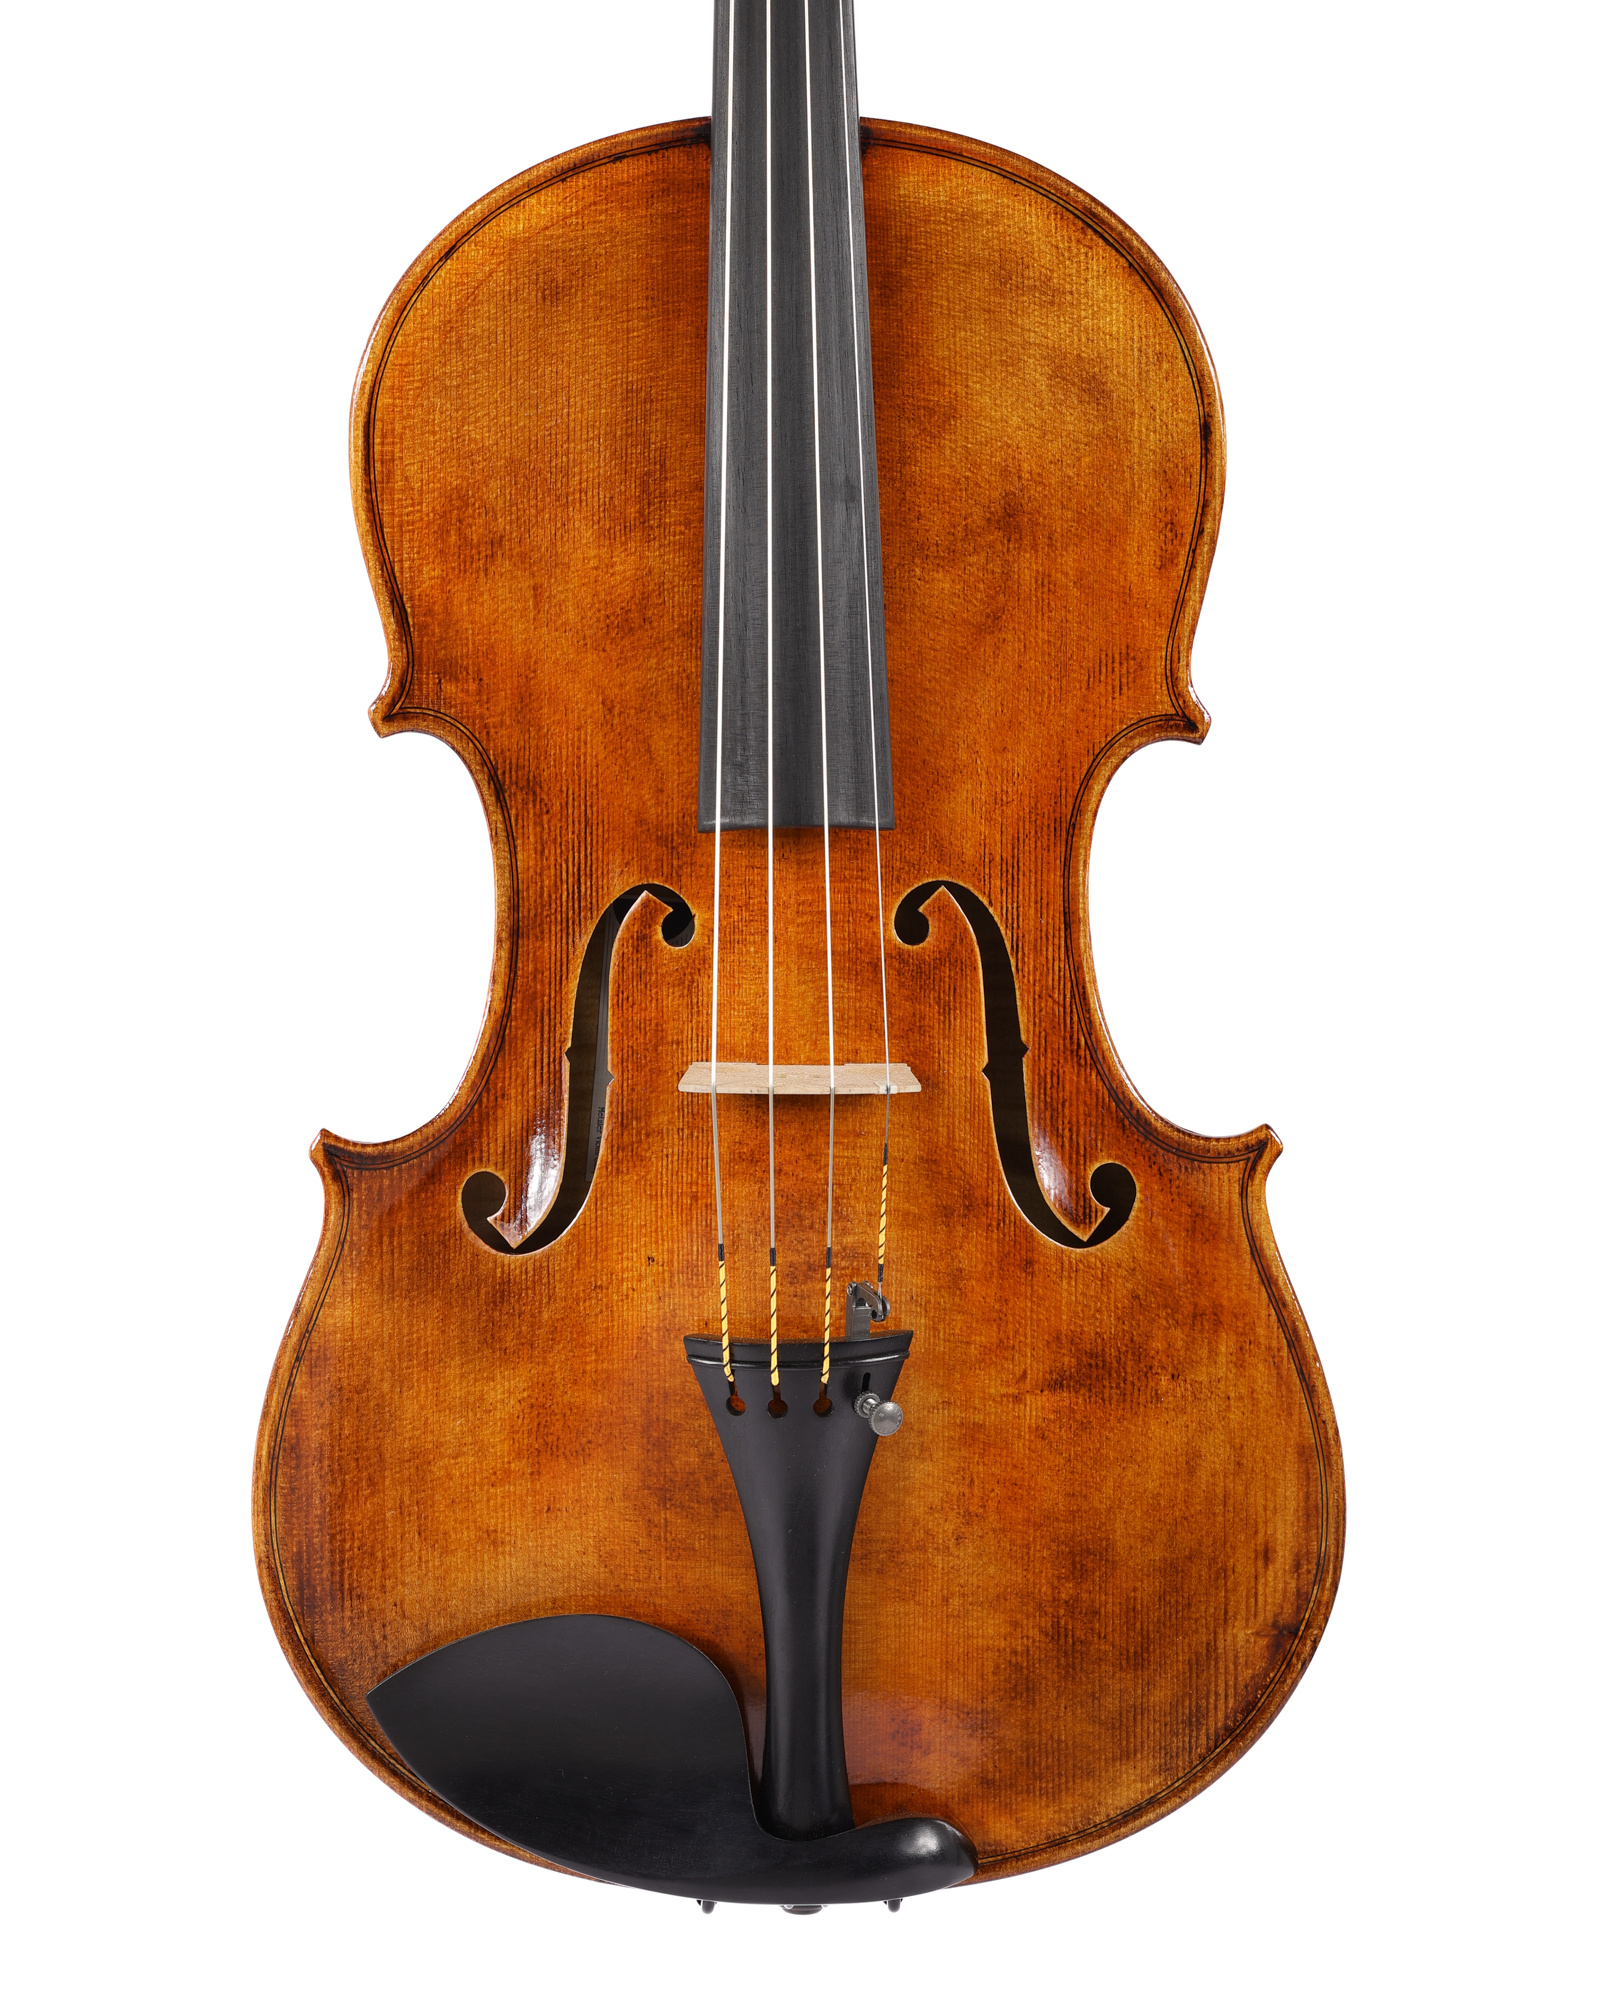 "Solare" 16" viola, Metzler Violin Shop